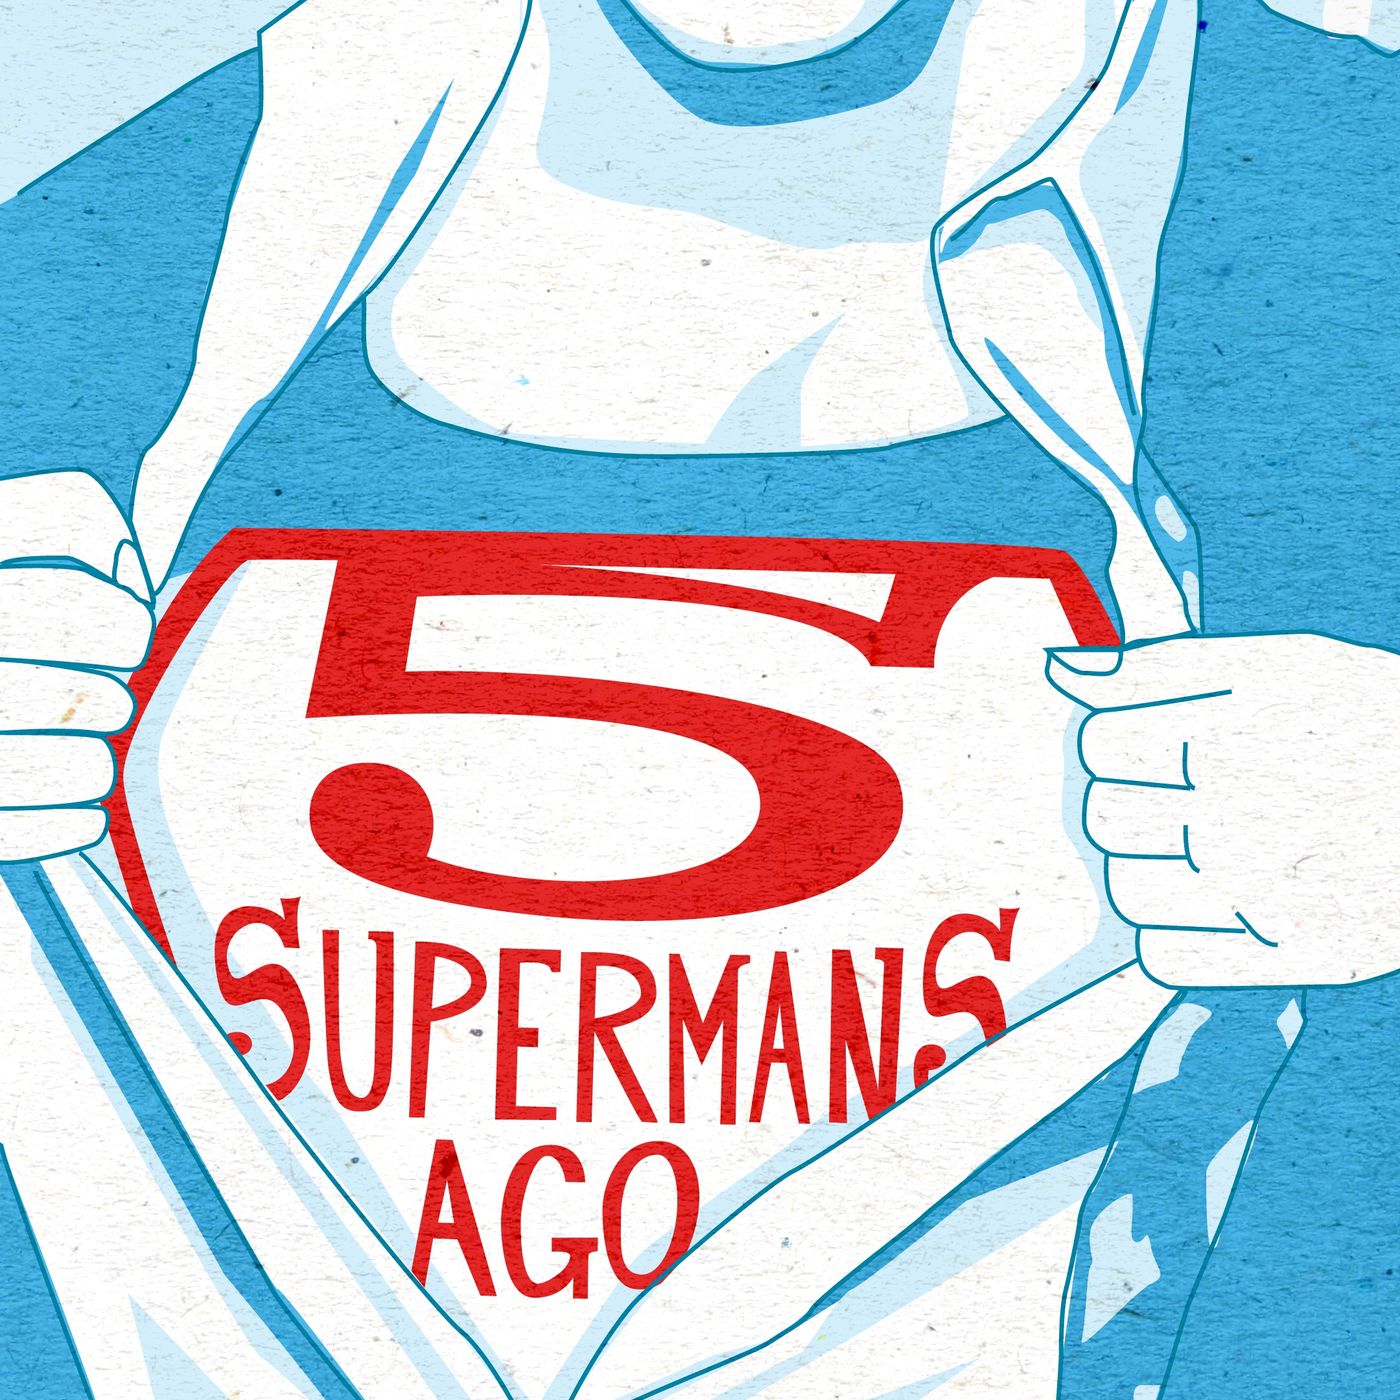 Five Supermans Ago: A Lois & Clark Show